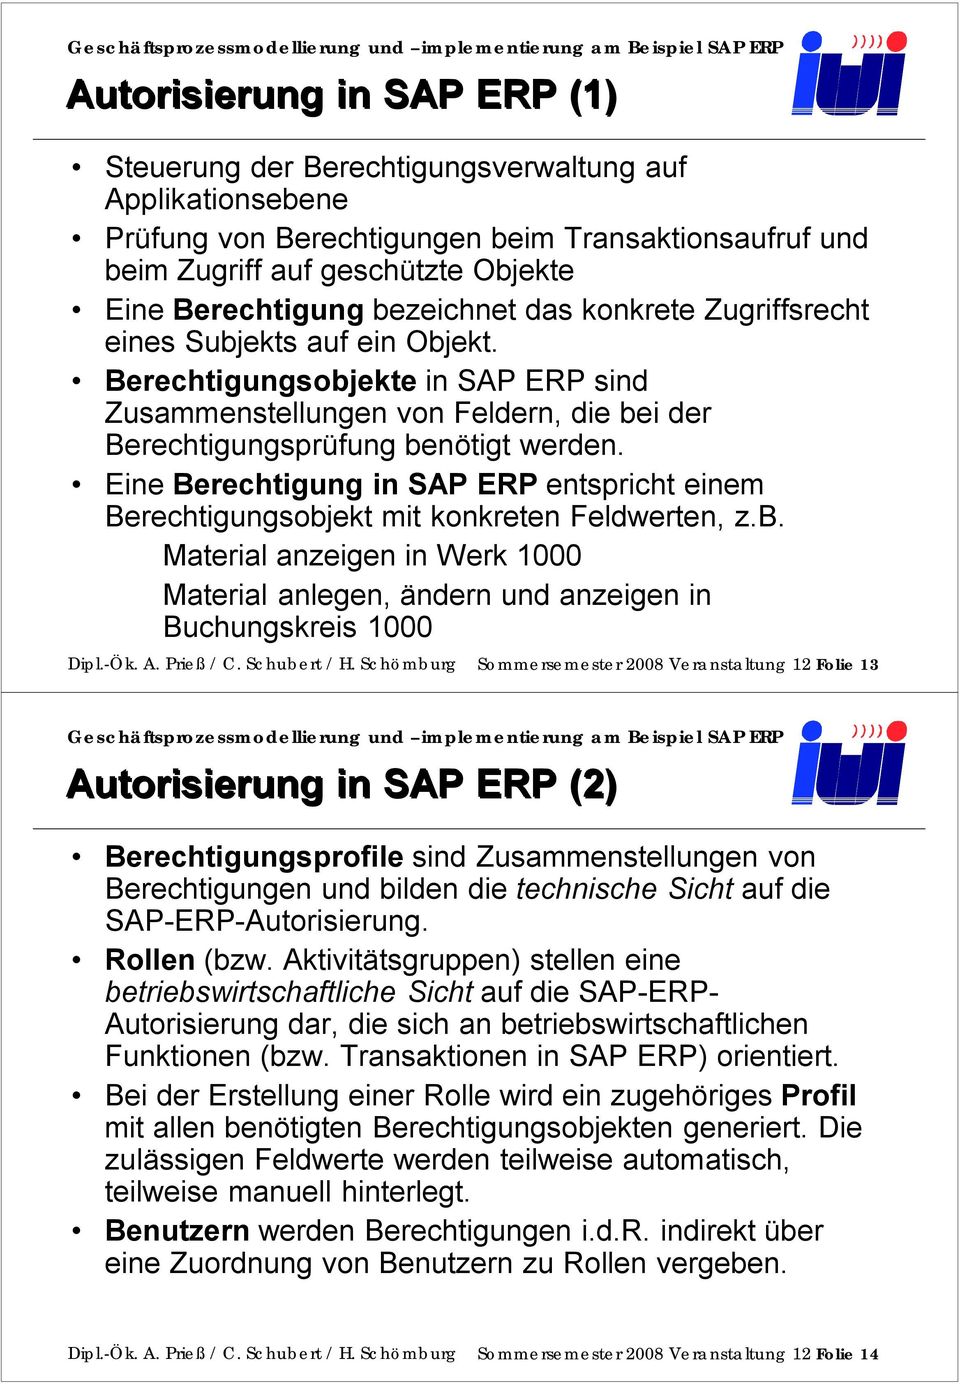 Eine Berechtigung in SAP ERP entspricht einem Berechtigungsobjekt mit konkreten Feldwerten, z.b. Material anzeigen in Werk 1000 Material anlegen, ändern und anzeigen in Buchungskreis 1000 Dipl.-Ök. A.